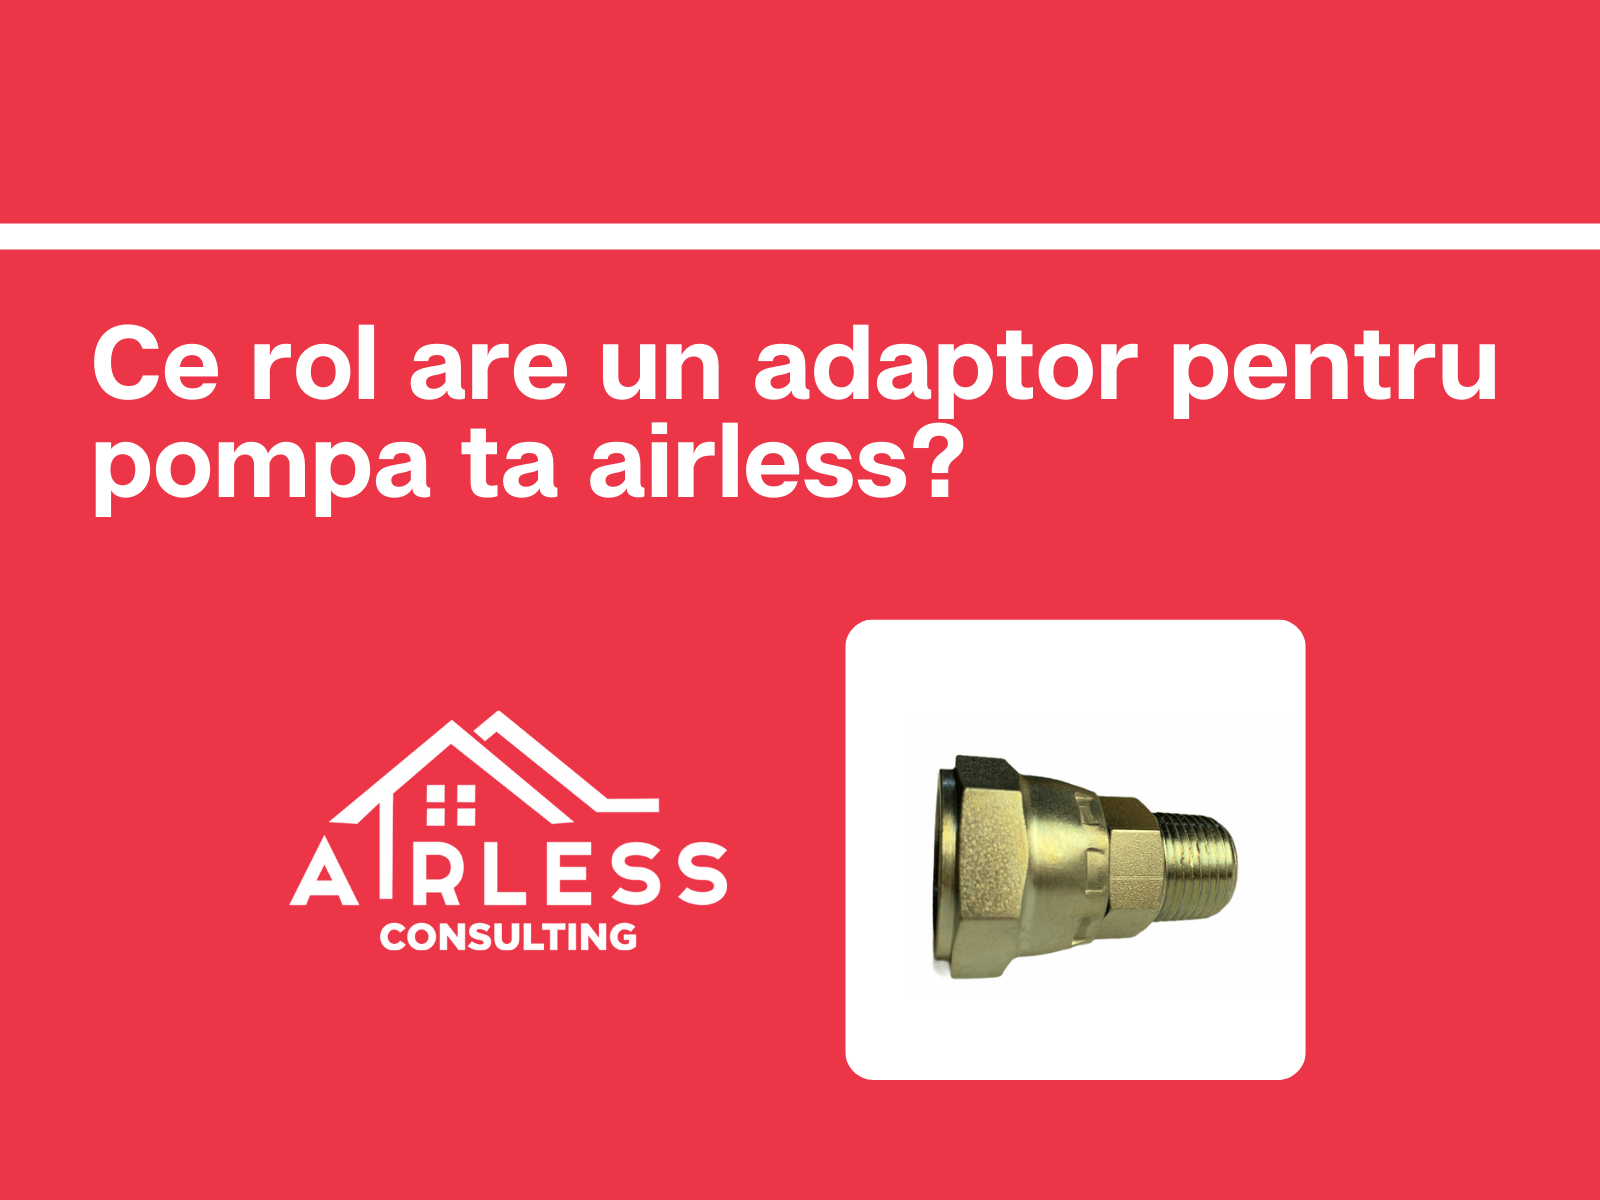 La ce te ajută un adaptor pentru pompa airless?